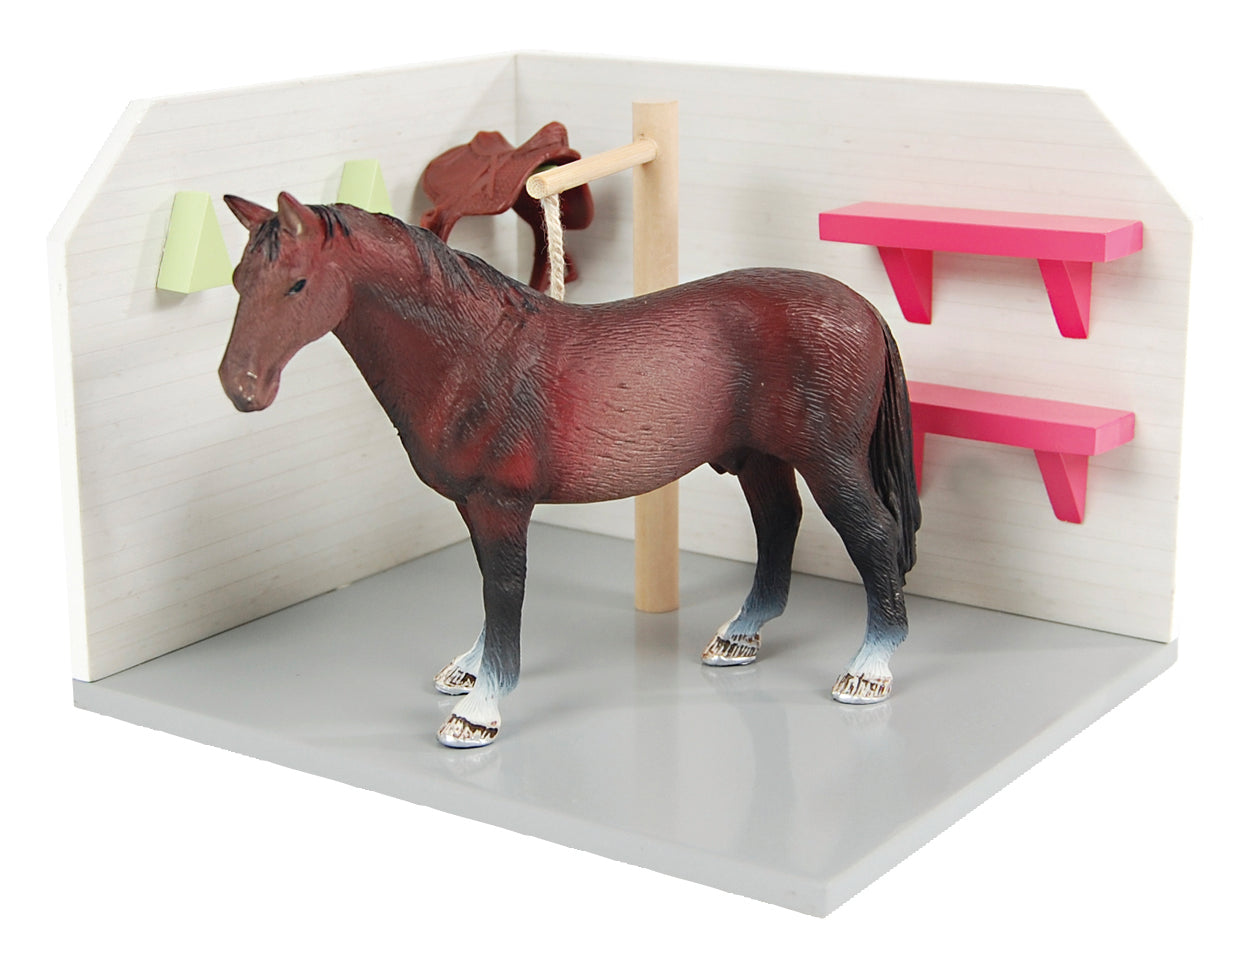 Horse wash box